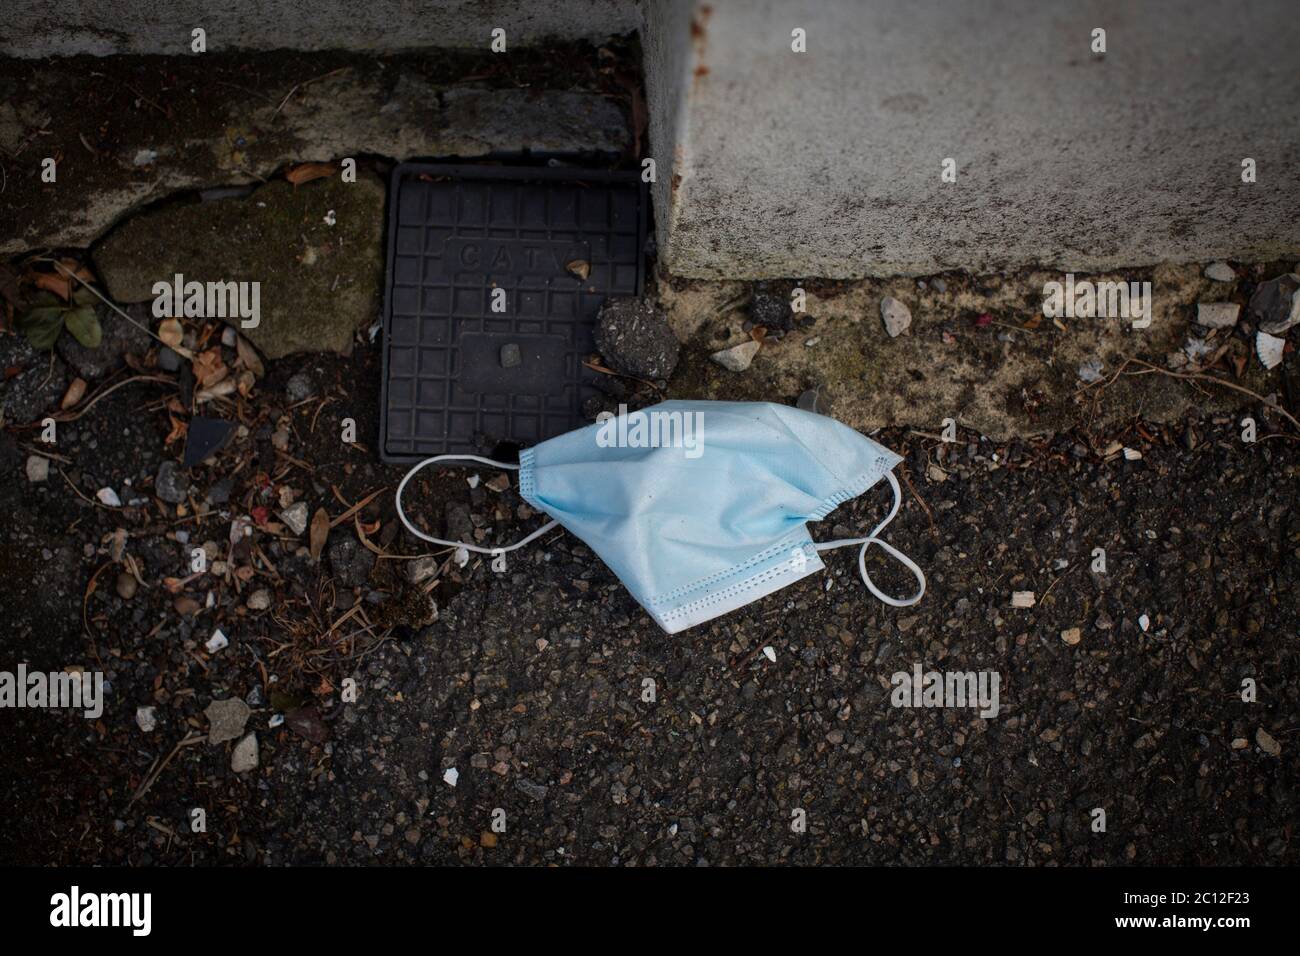 Tulse Hill, London, England. Juni 2020. Eine weggeworfene medizinische Gesichtsmaske, die zur Verhinderung der Ausbreitung des Coronavirus auf dem Boden in Tulse Hill in South London, England, verwendet wird. (Foto von Sam Mellish / Alamy Live News) Stockfoto